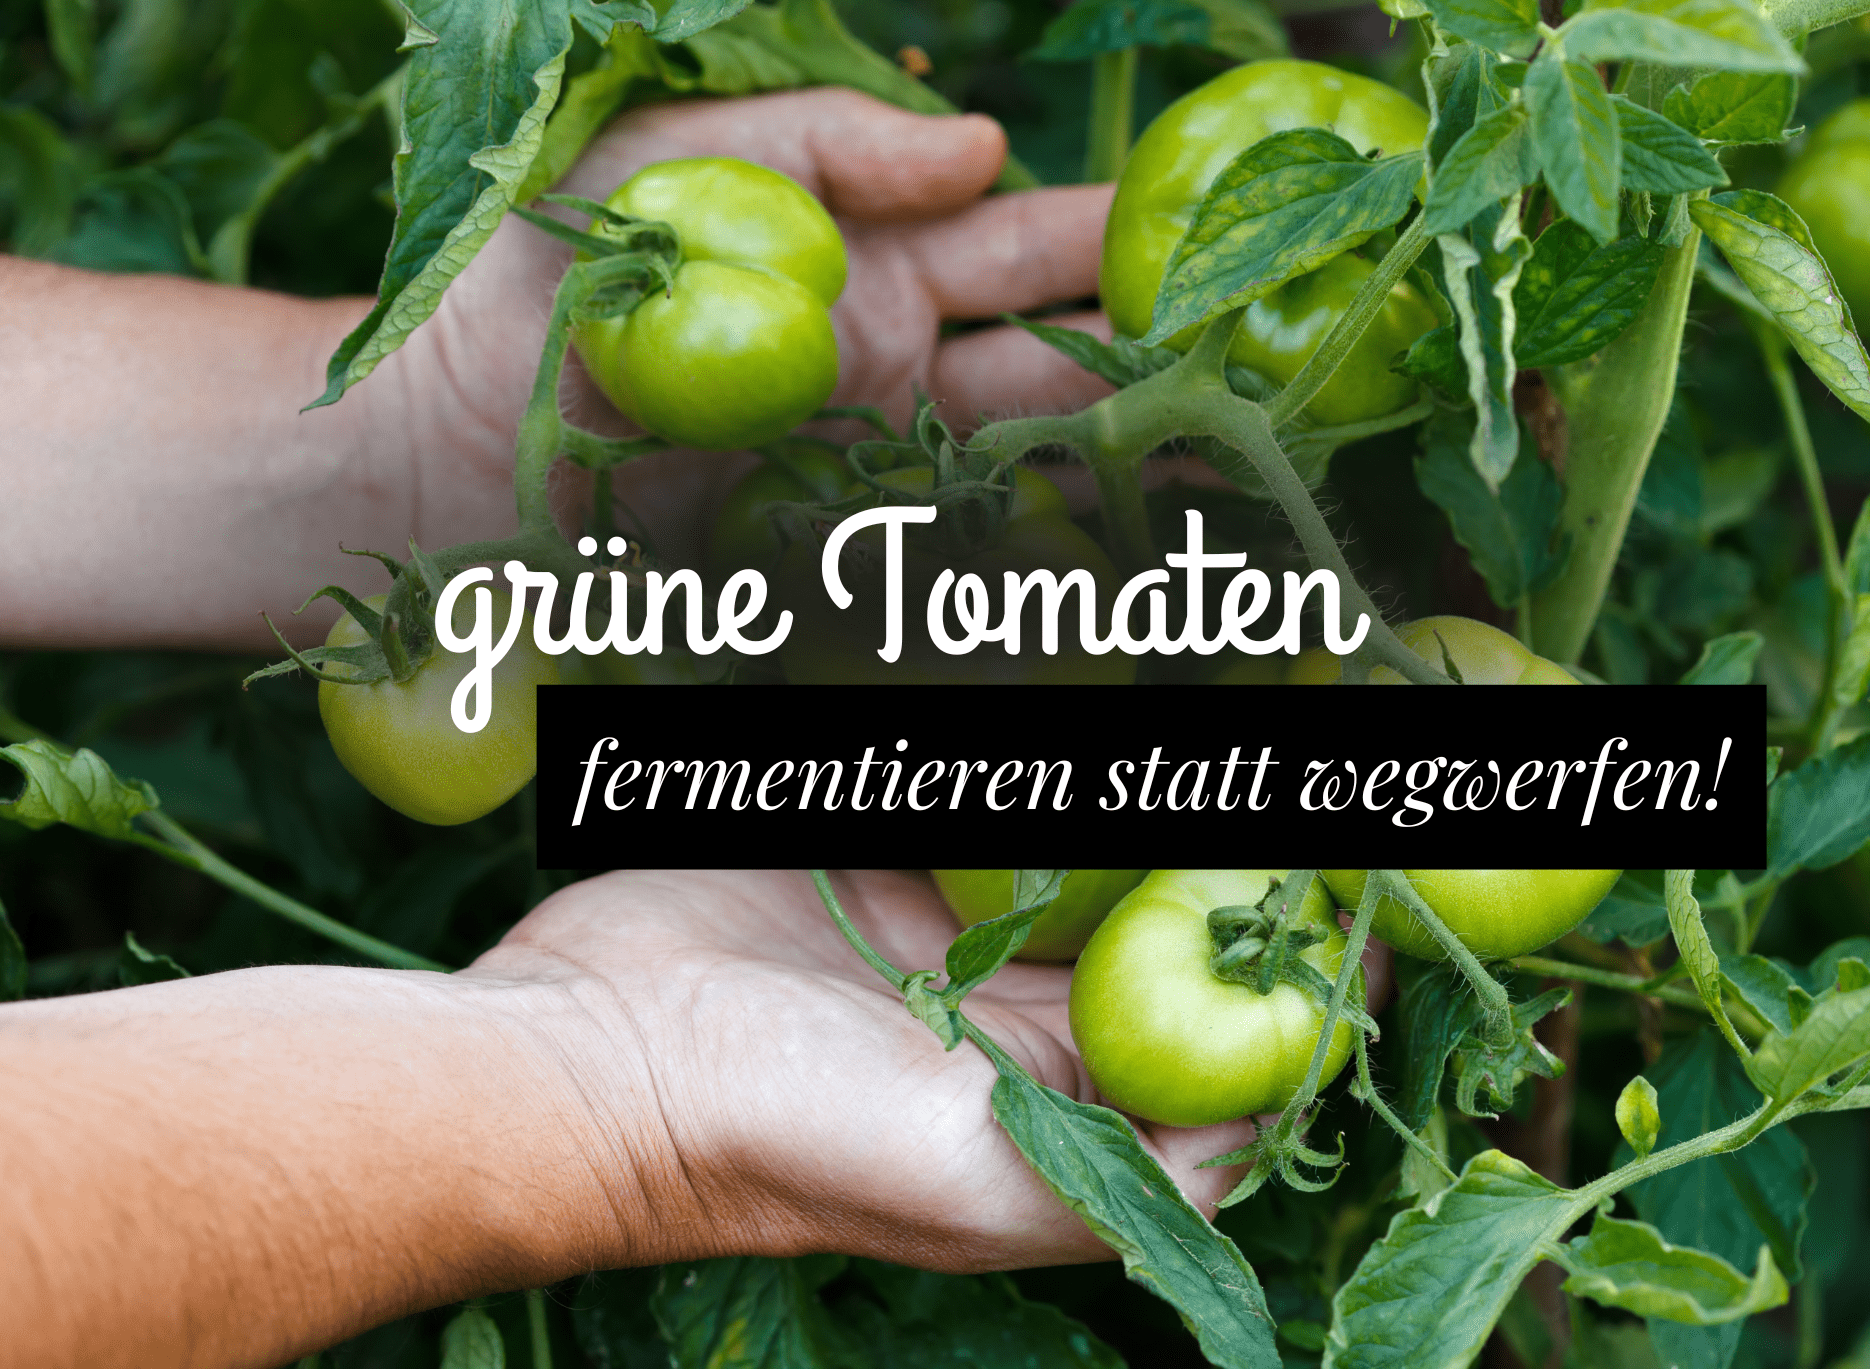 Mehr über den Artikel erfahren grüne Tomaten fermentieren